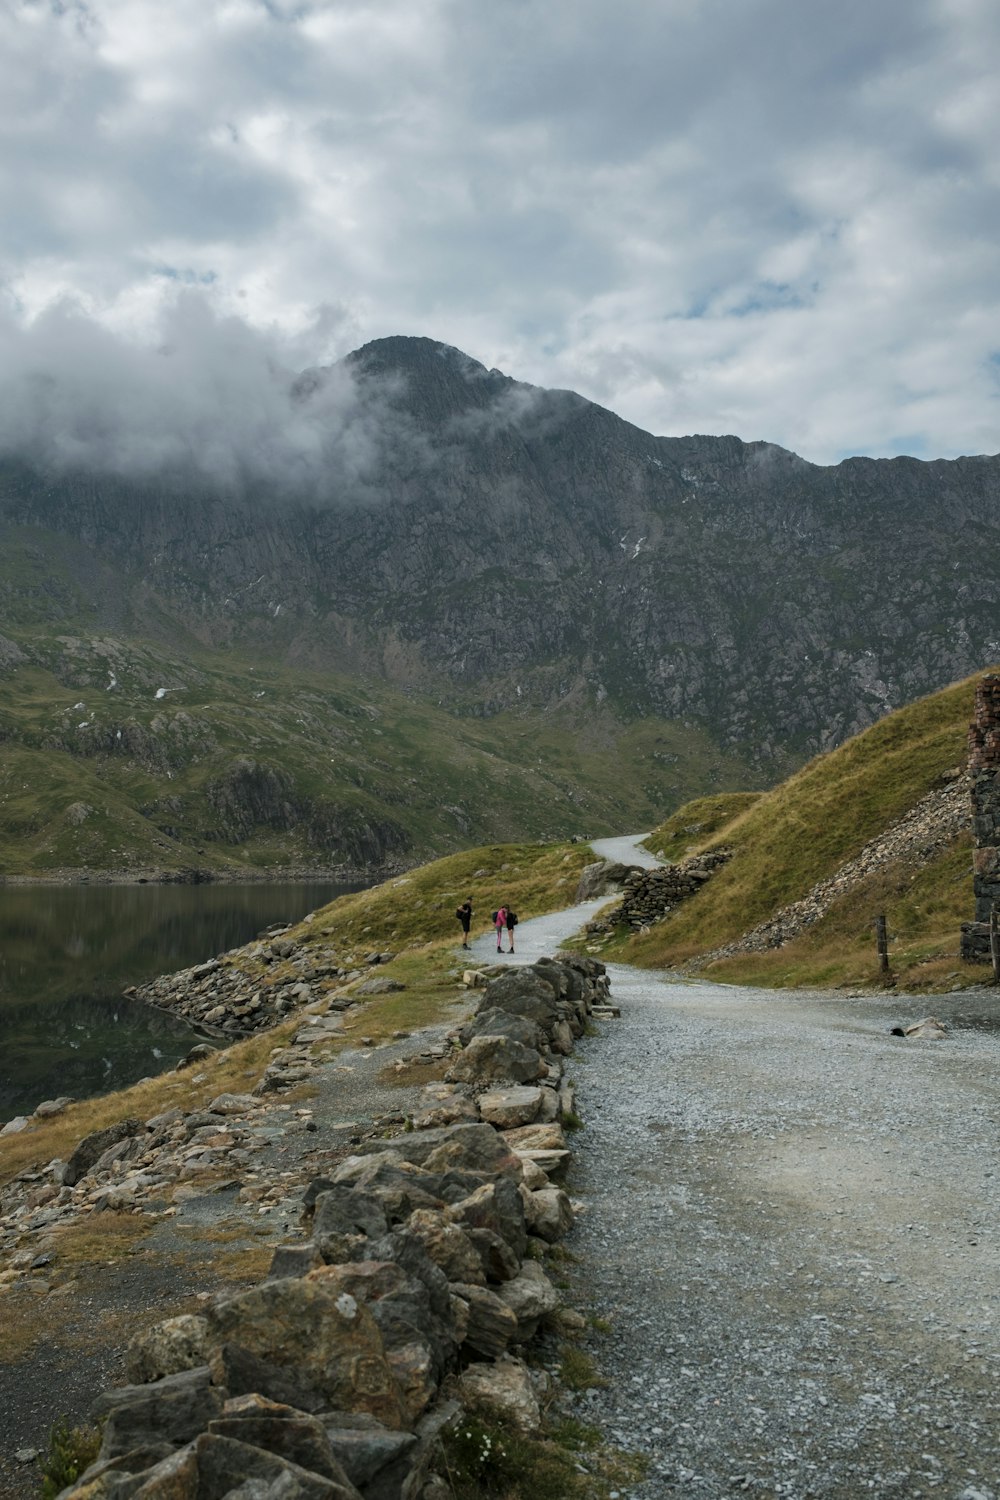 people walking on a path in a mountainous region